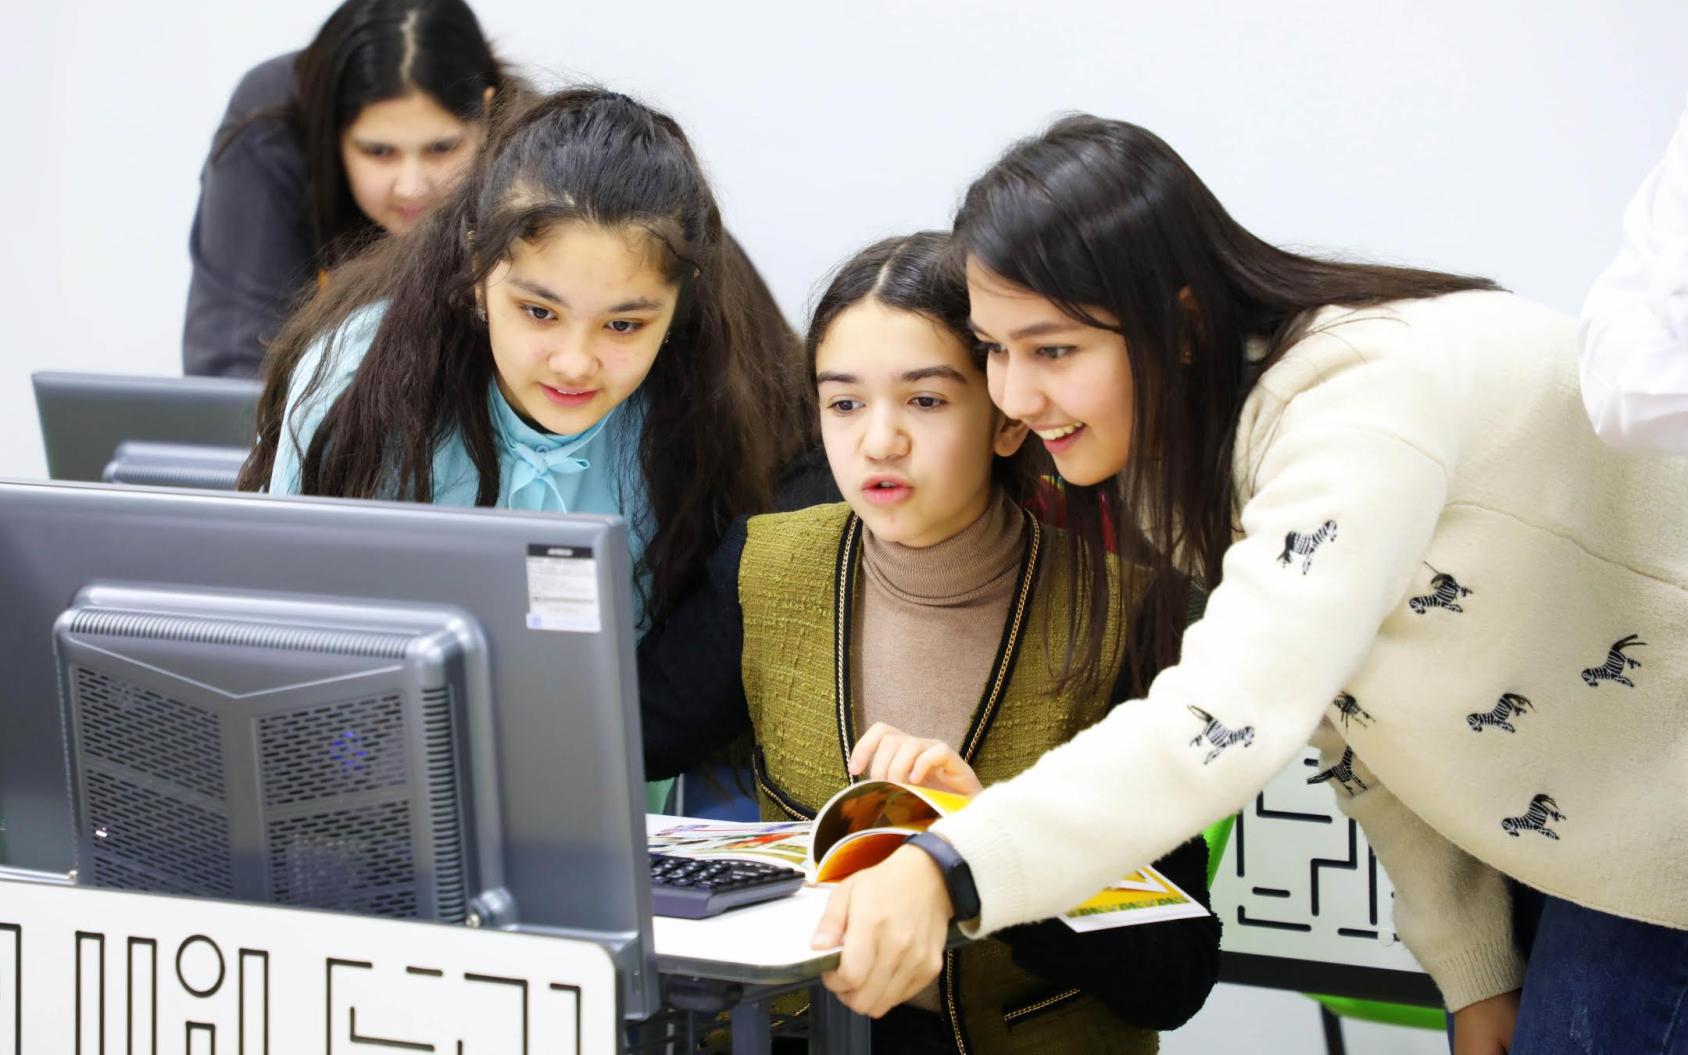 مجموعة من الفتيات المبتسمات يعملن معًا على الكمبيوتر.